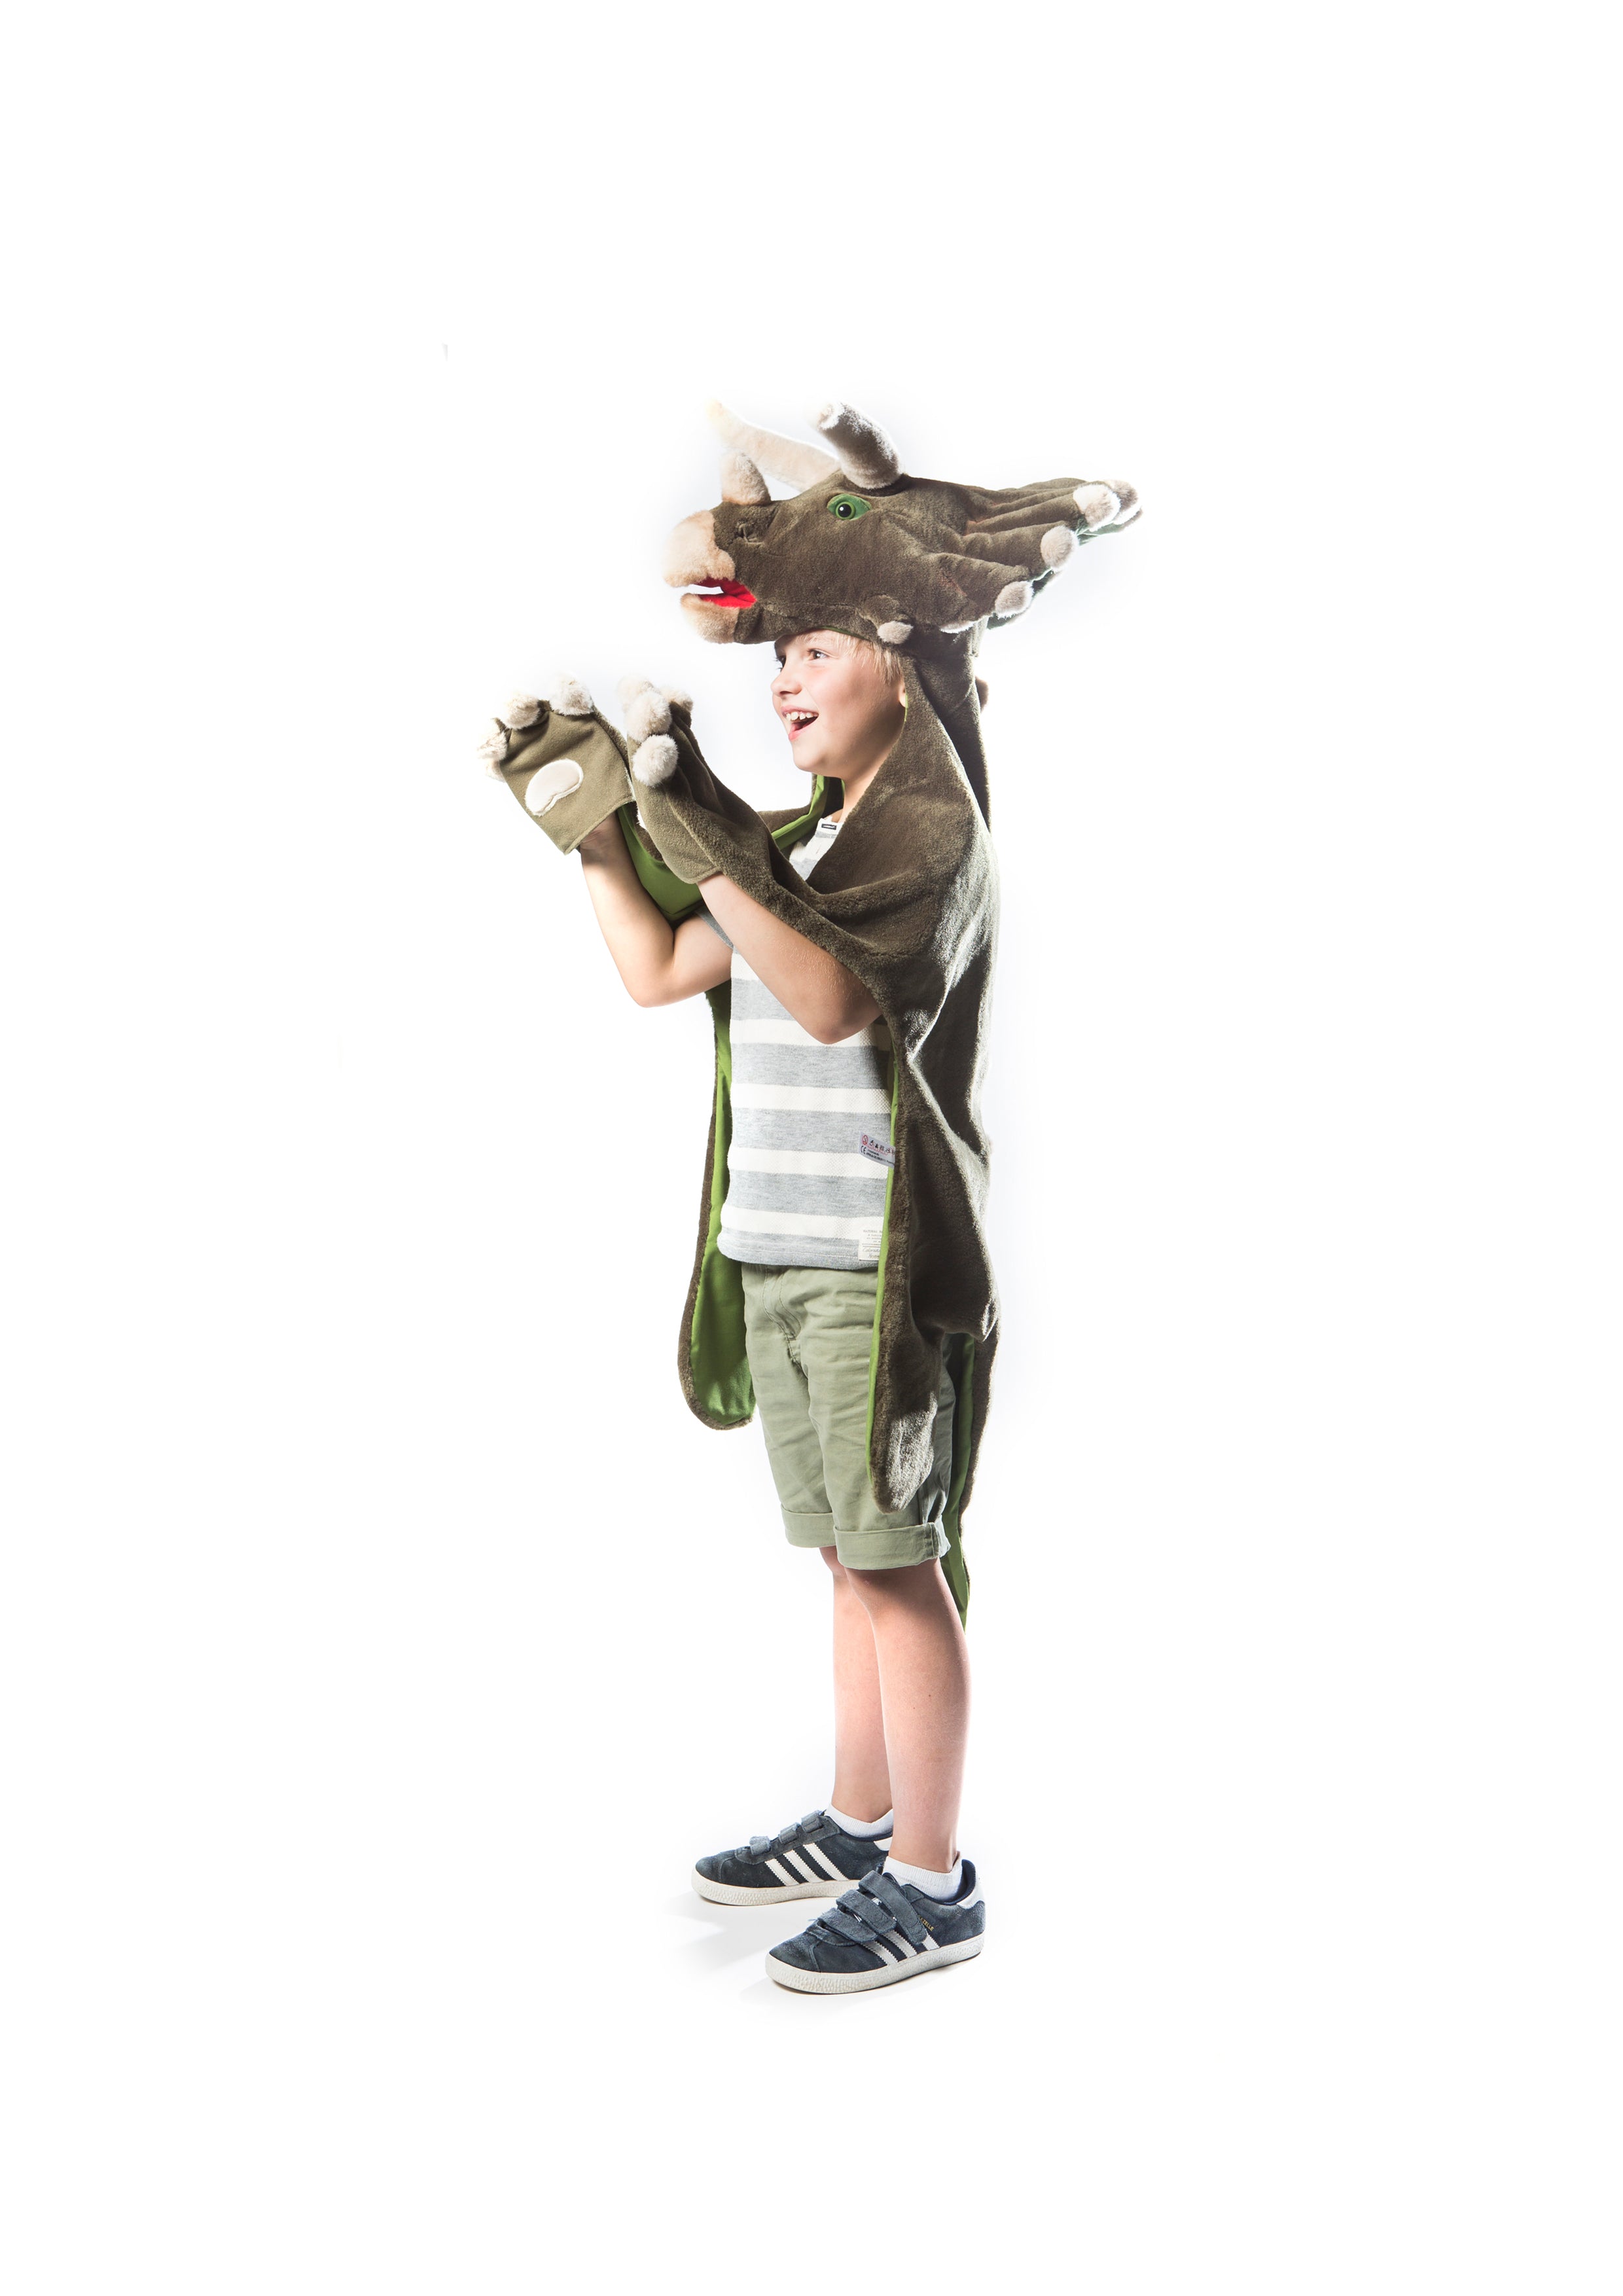 WILD&SOFT Verzaubere dein inneres Kind mit unserem Dinosaurier Kostüm aus hochwertigem Kunstpelz! 🦕💫 Tauche ein in die Welt der Dinosaurier und erlebe stundenlange Abenteuer und Gemütlichkeit! 🌟💚